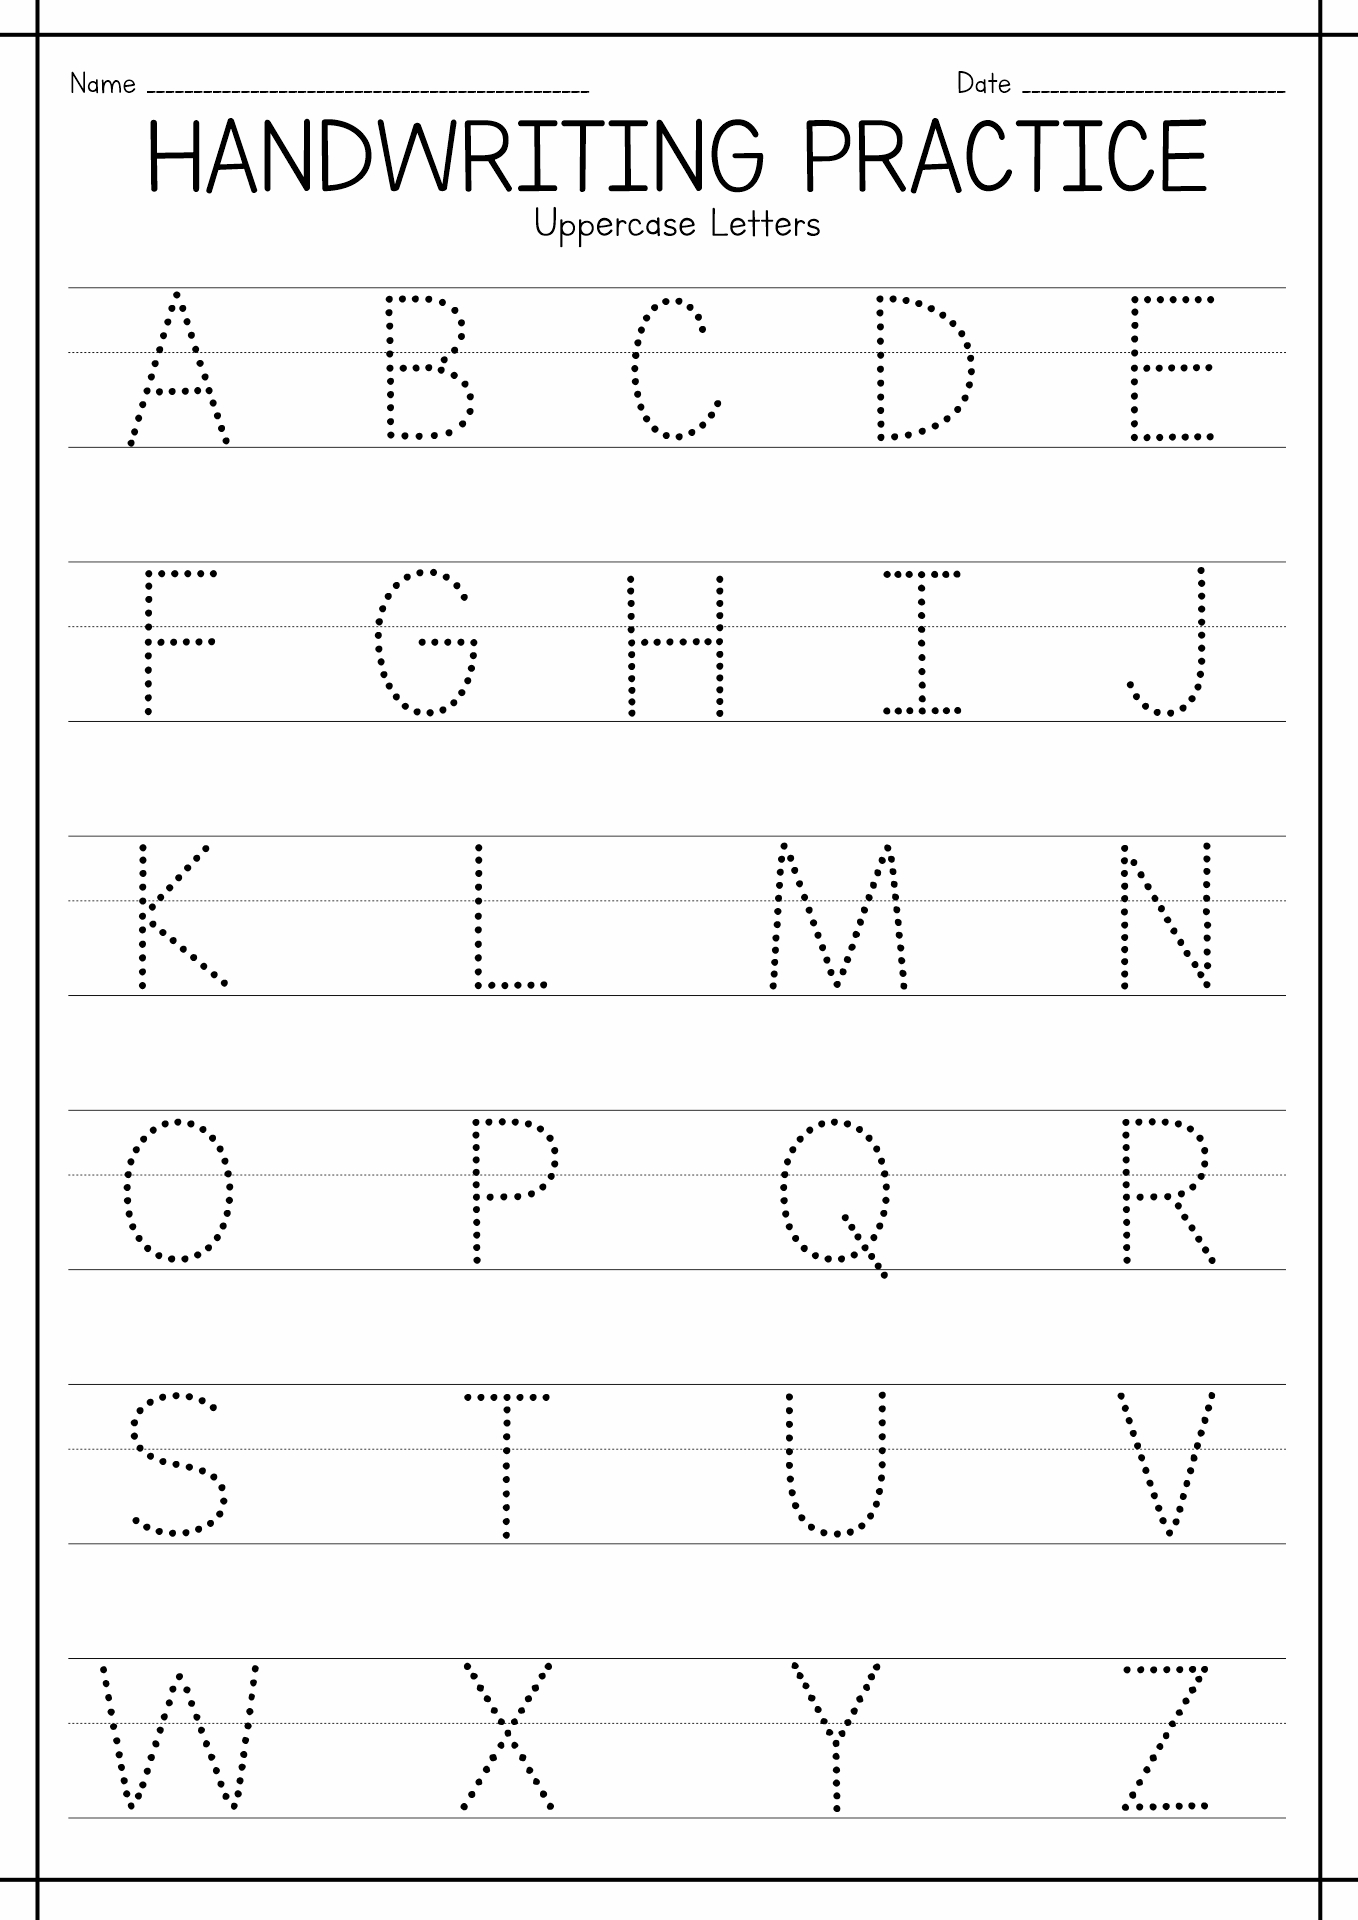 Free Printable Handwriting Practice Worksheet for Kindergarten Image